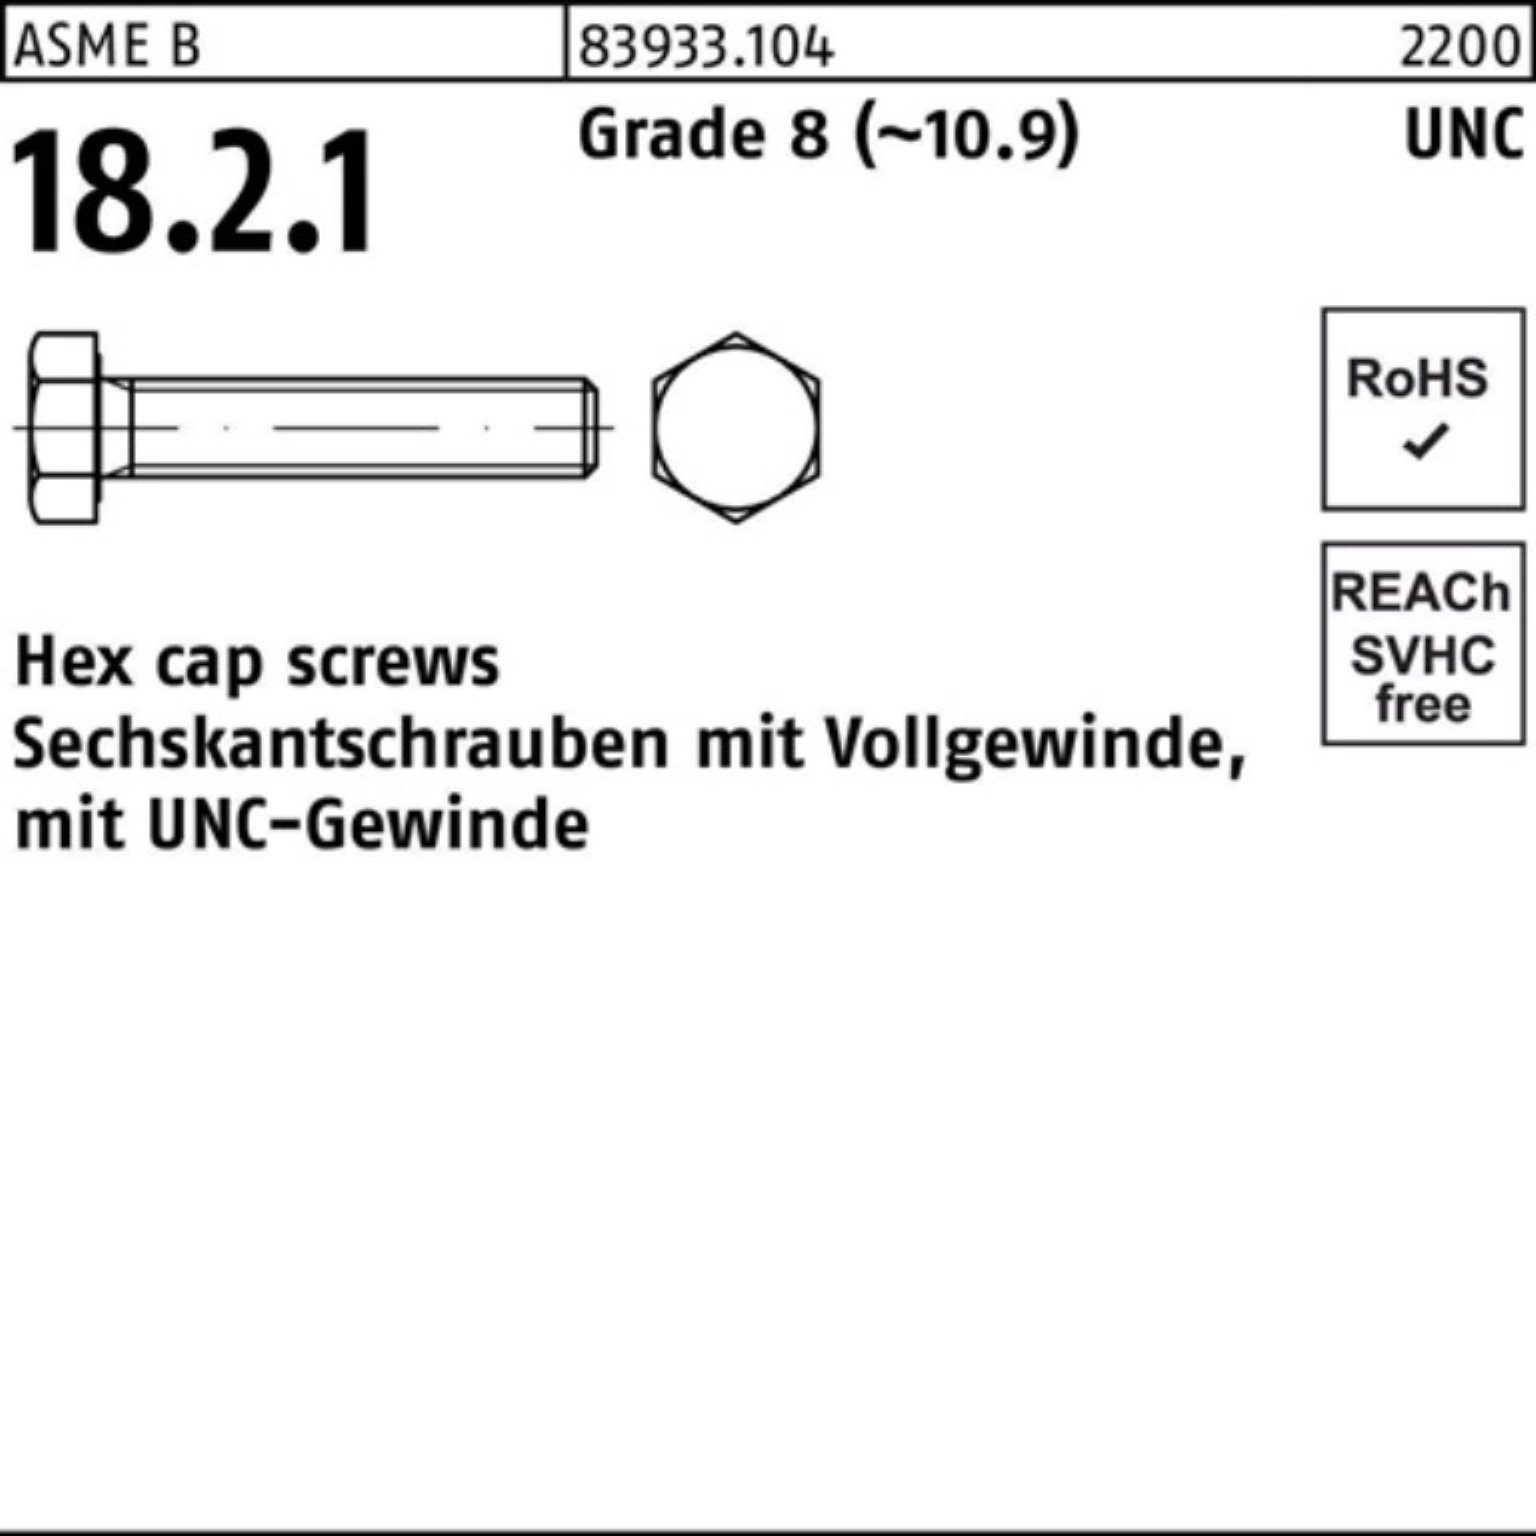 Reyher Sechskantschraube 100er Pack Sechskantschraube R 83933 UNC-Gewinde VG 1/4x 5/8 Grade 8